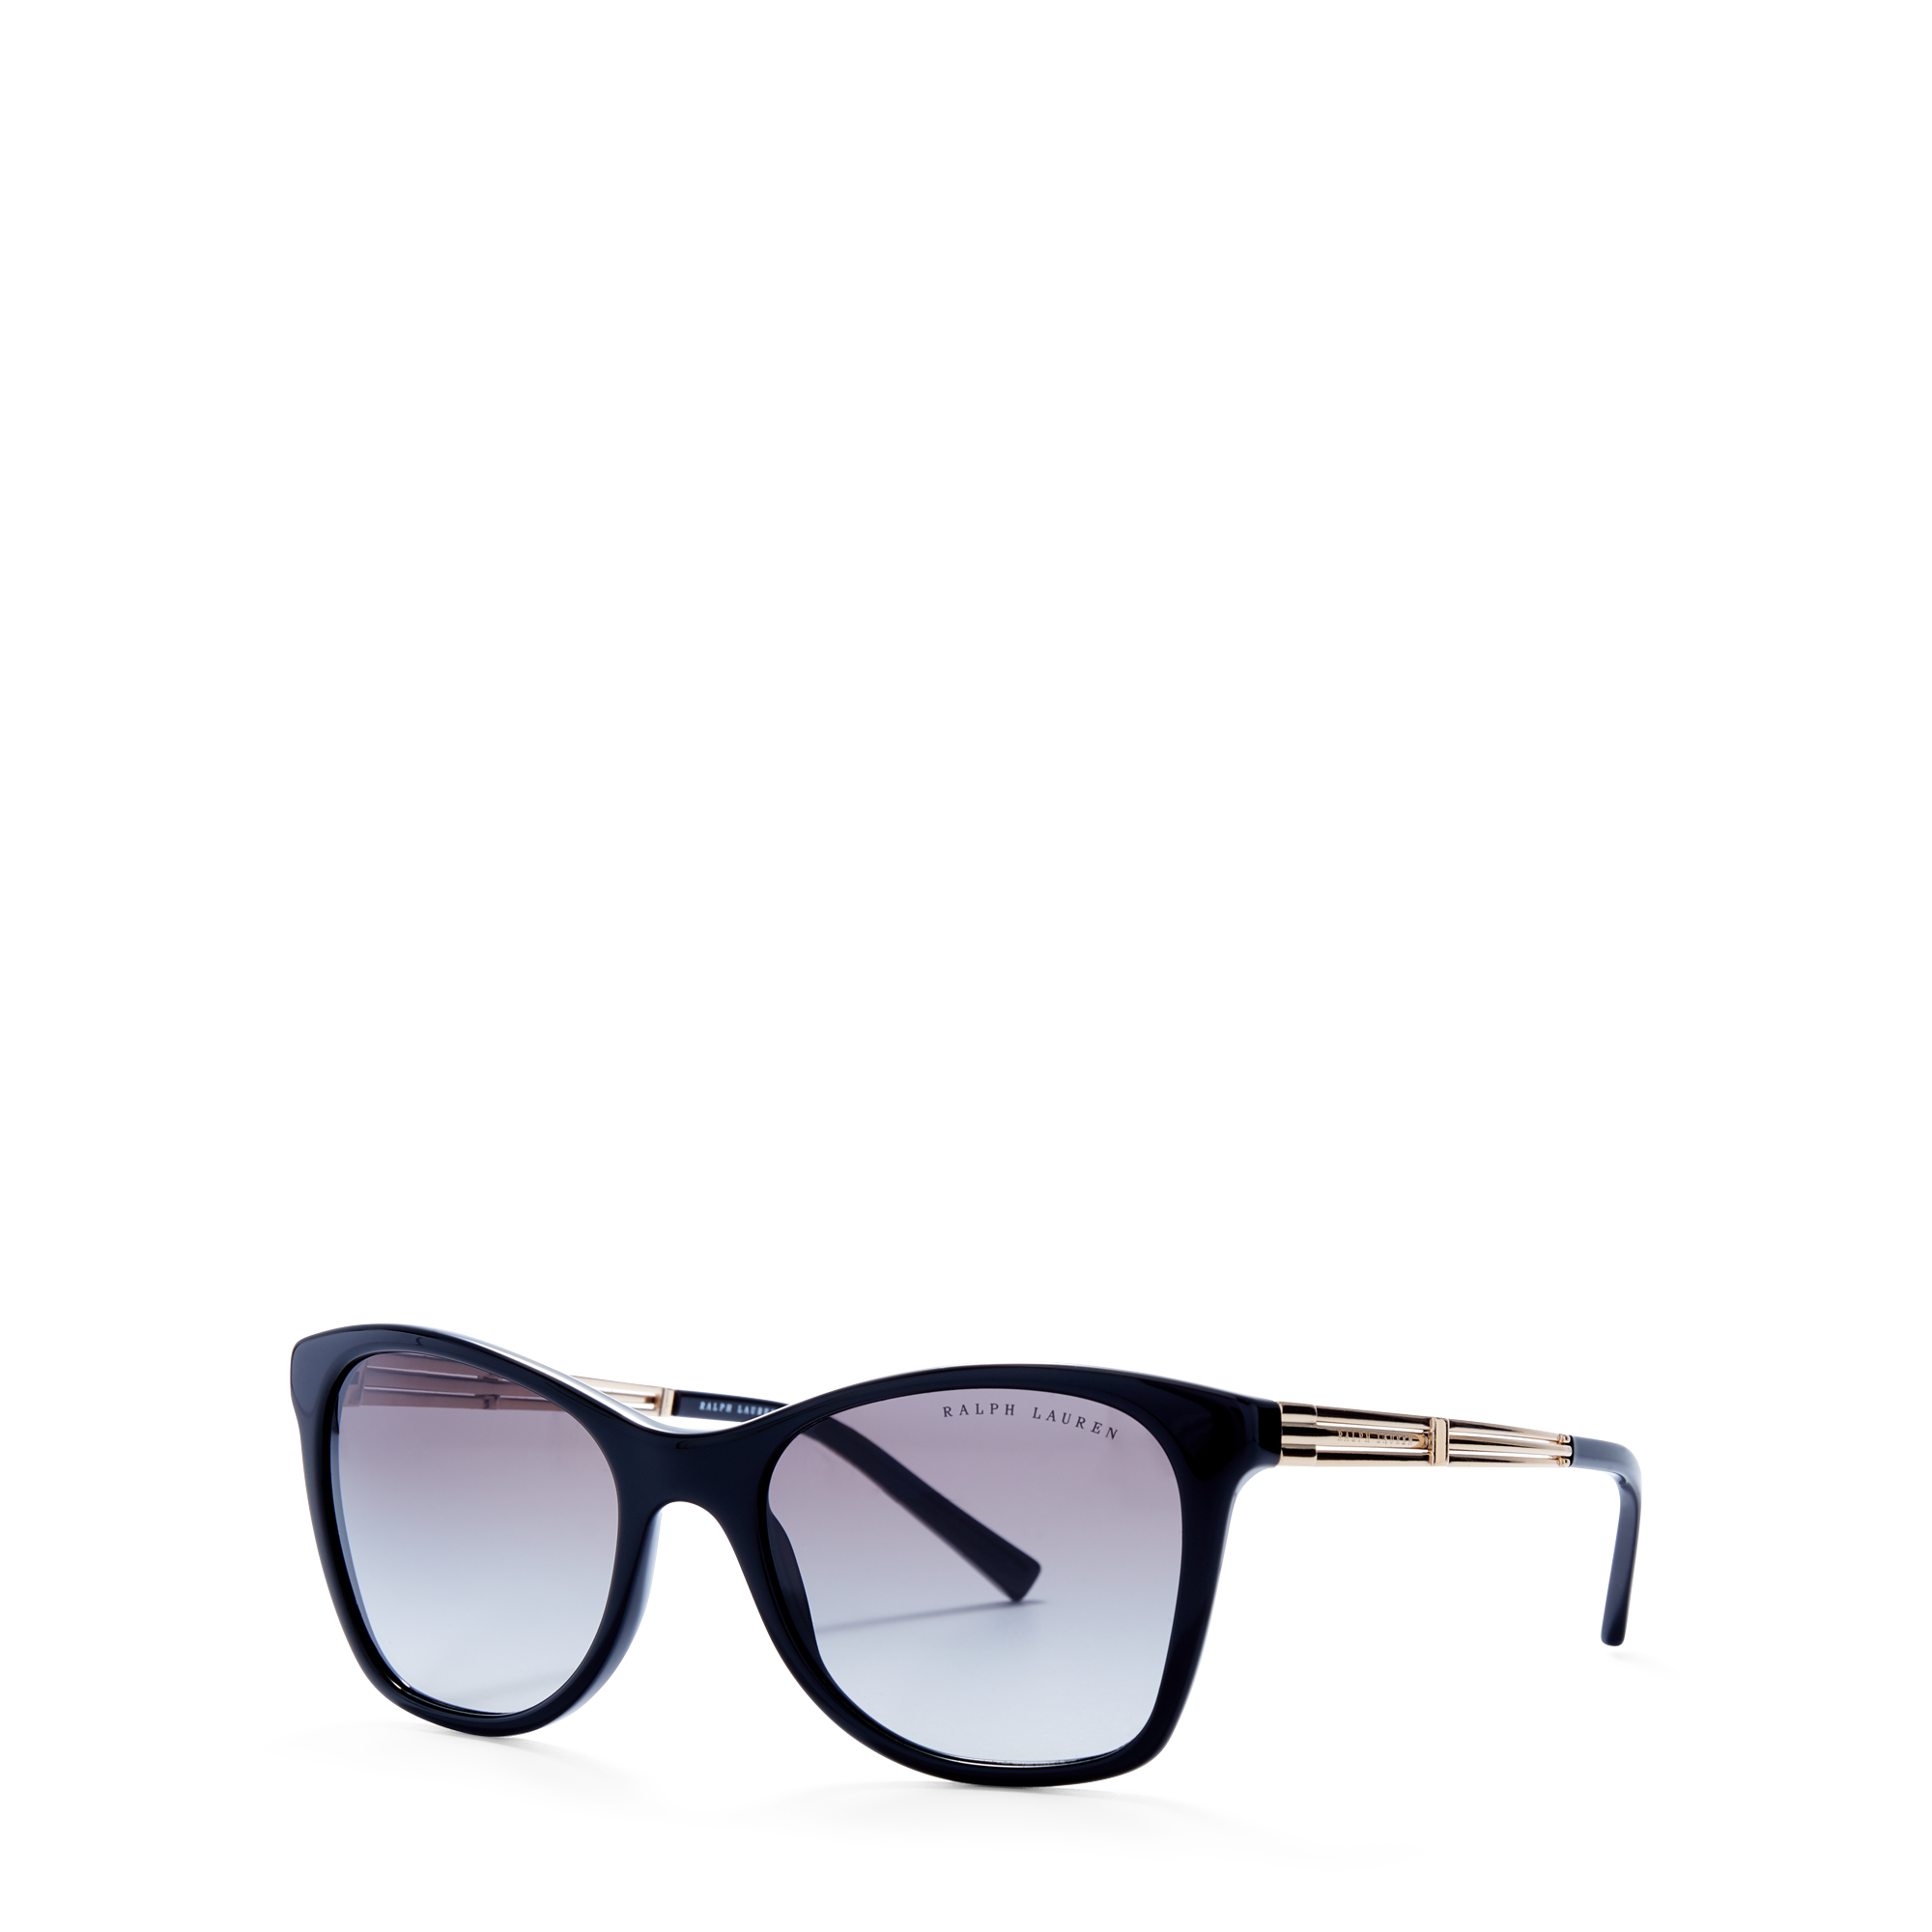 Ralph Lauren Art Deco Square Sunglasses. 2